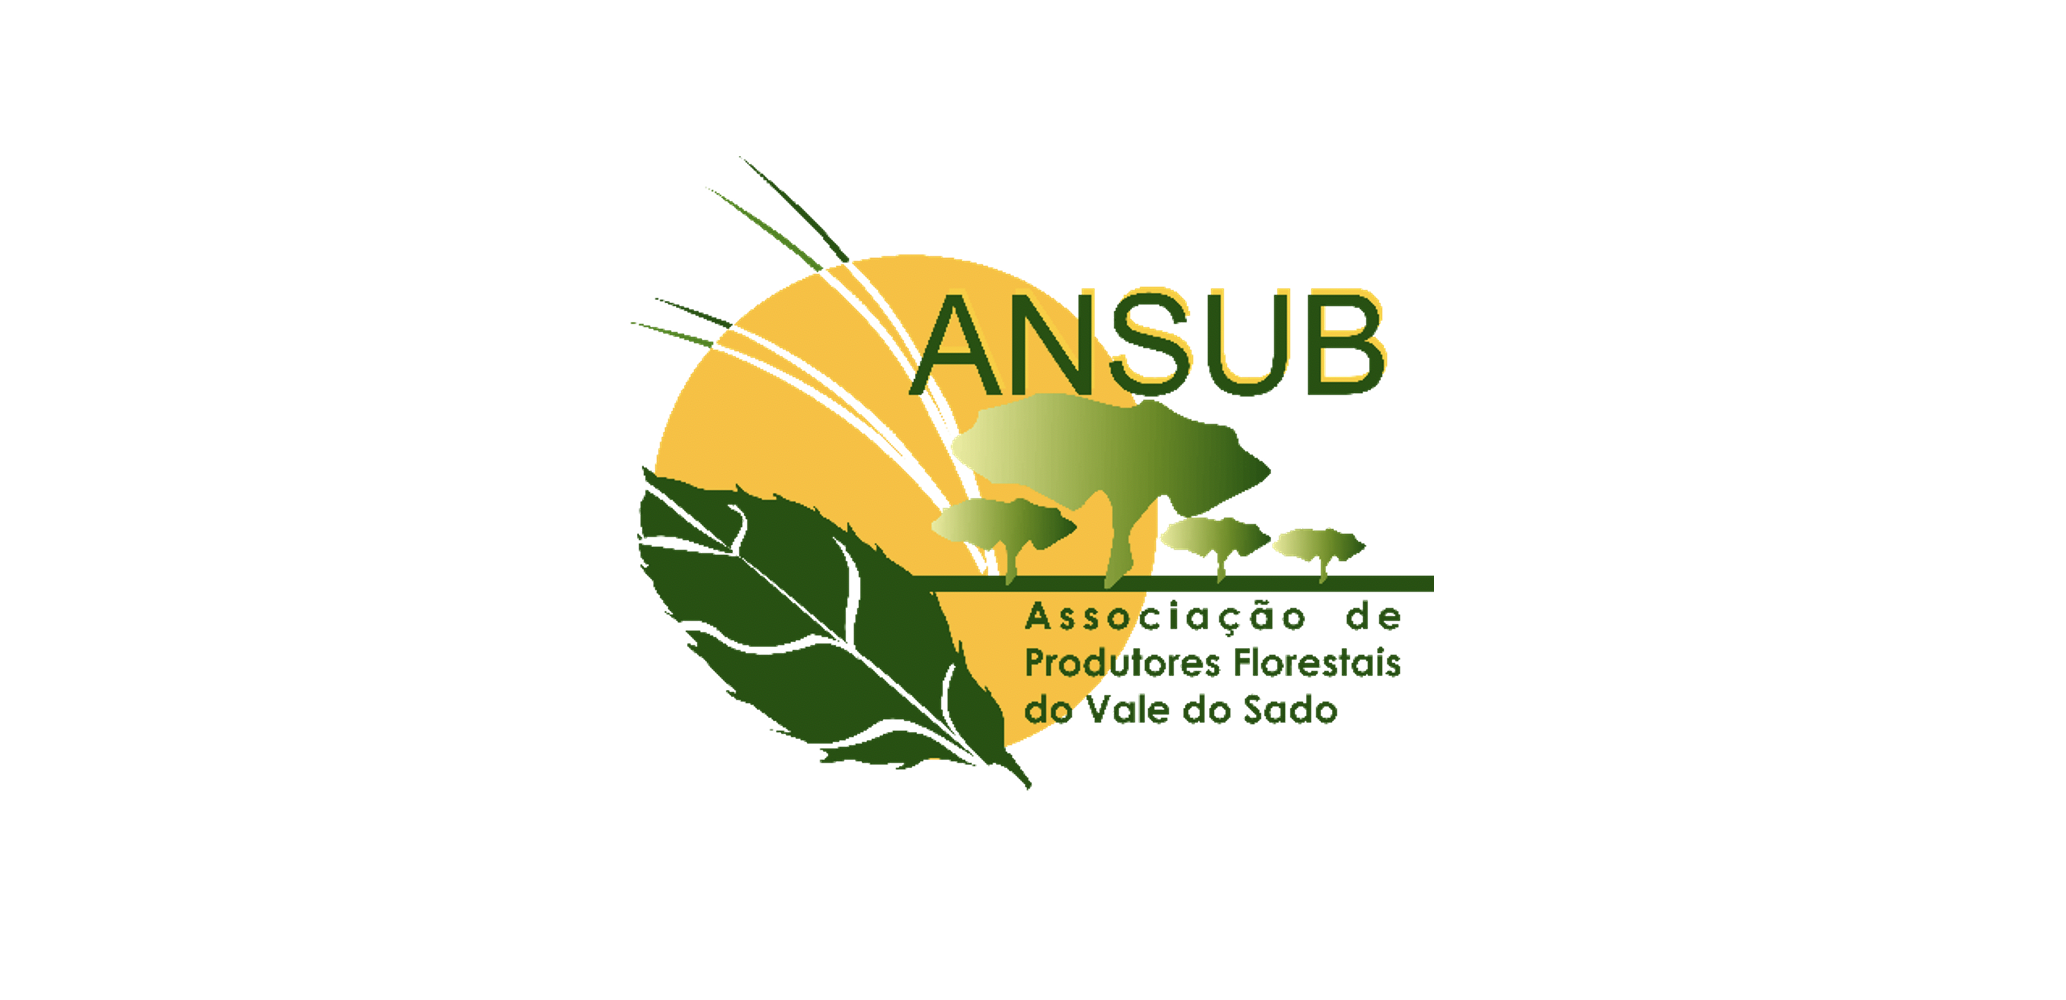 ANSUB está a recrutar em várias áreas